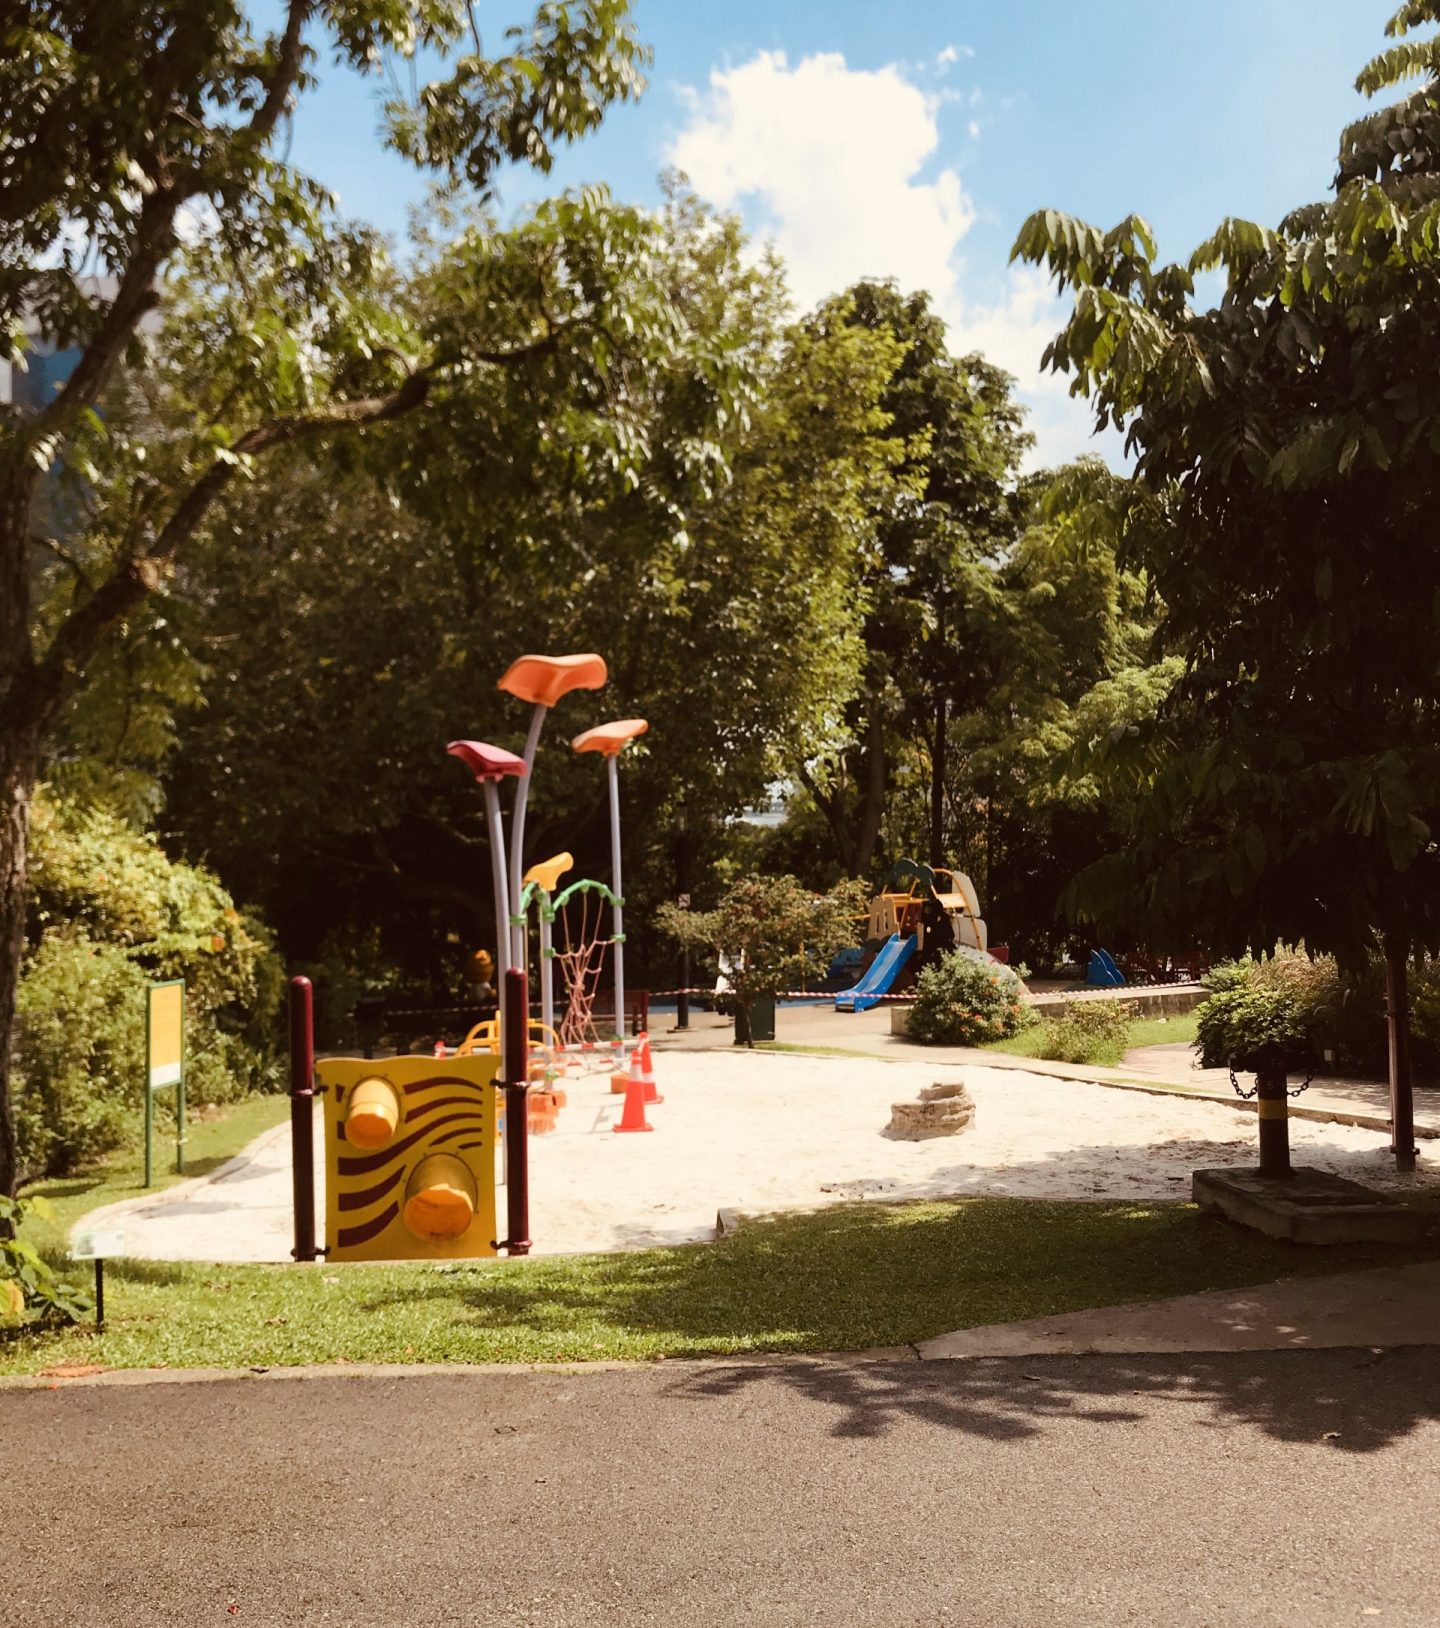 Hort-Park-playground